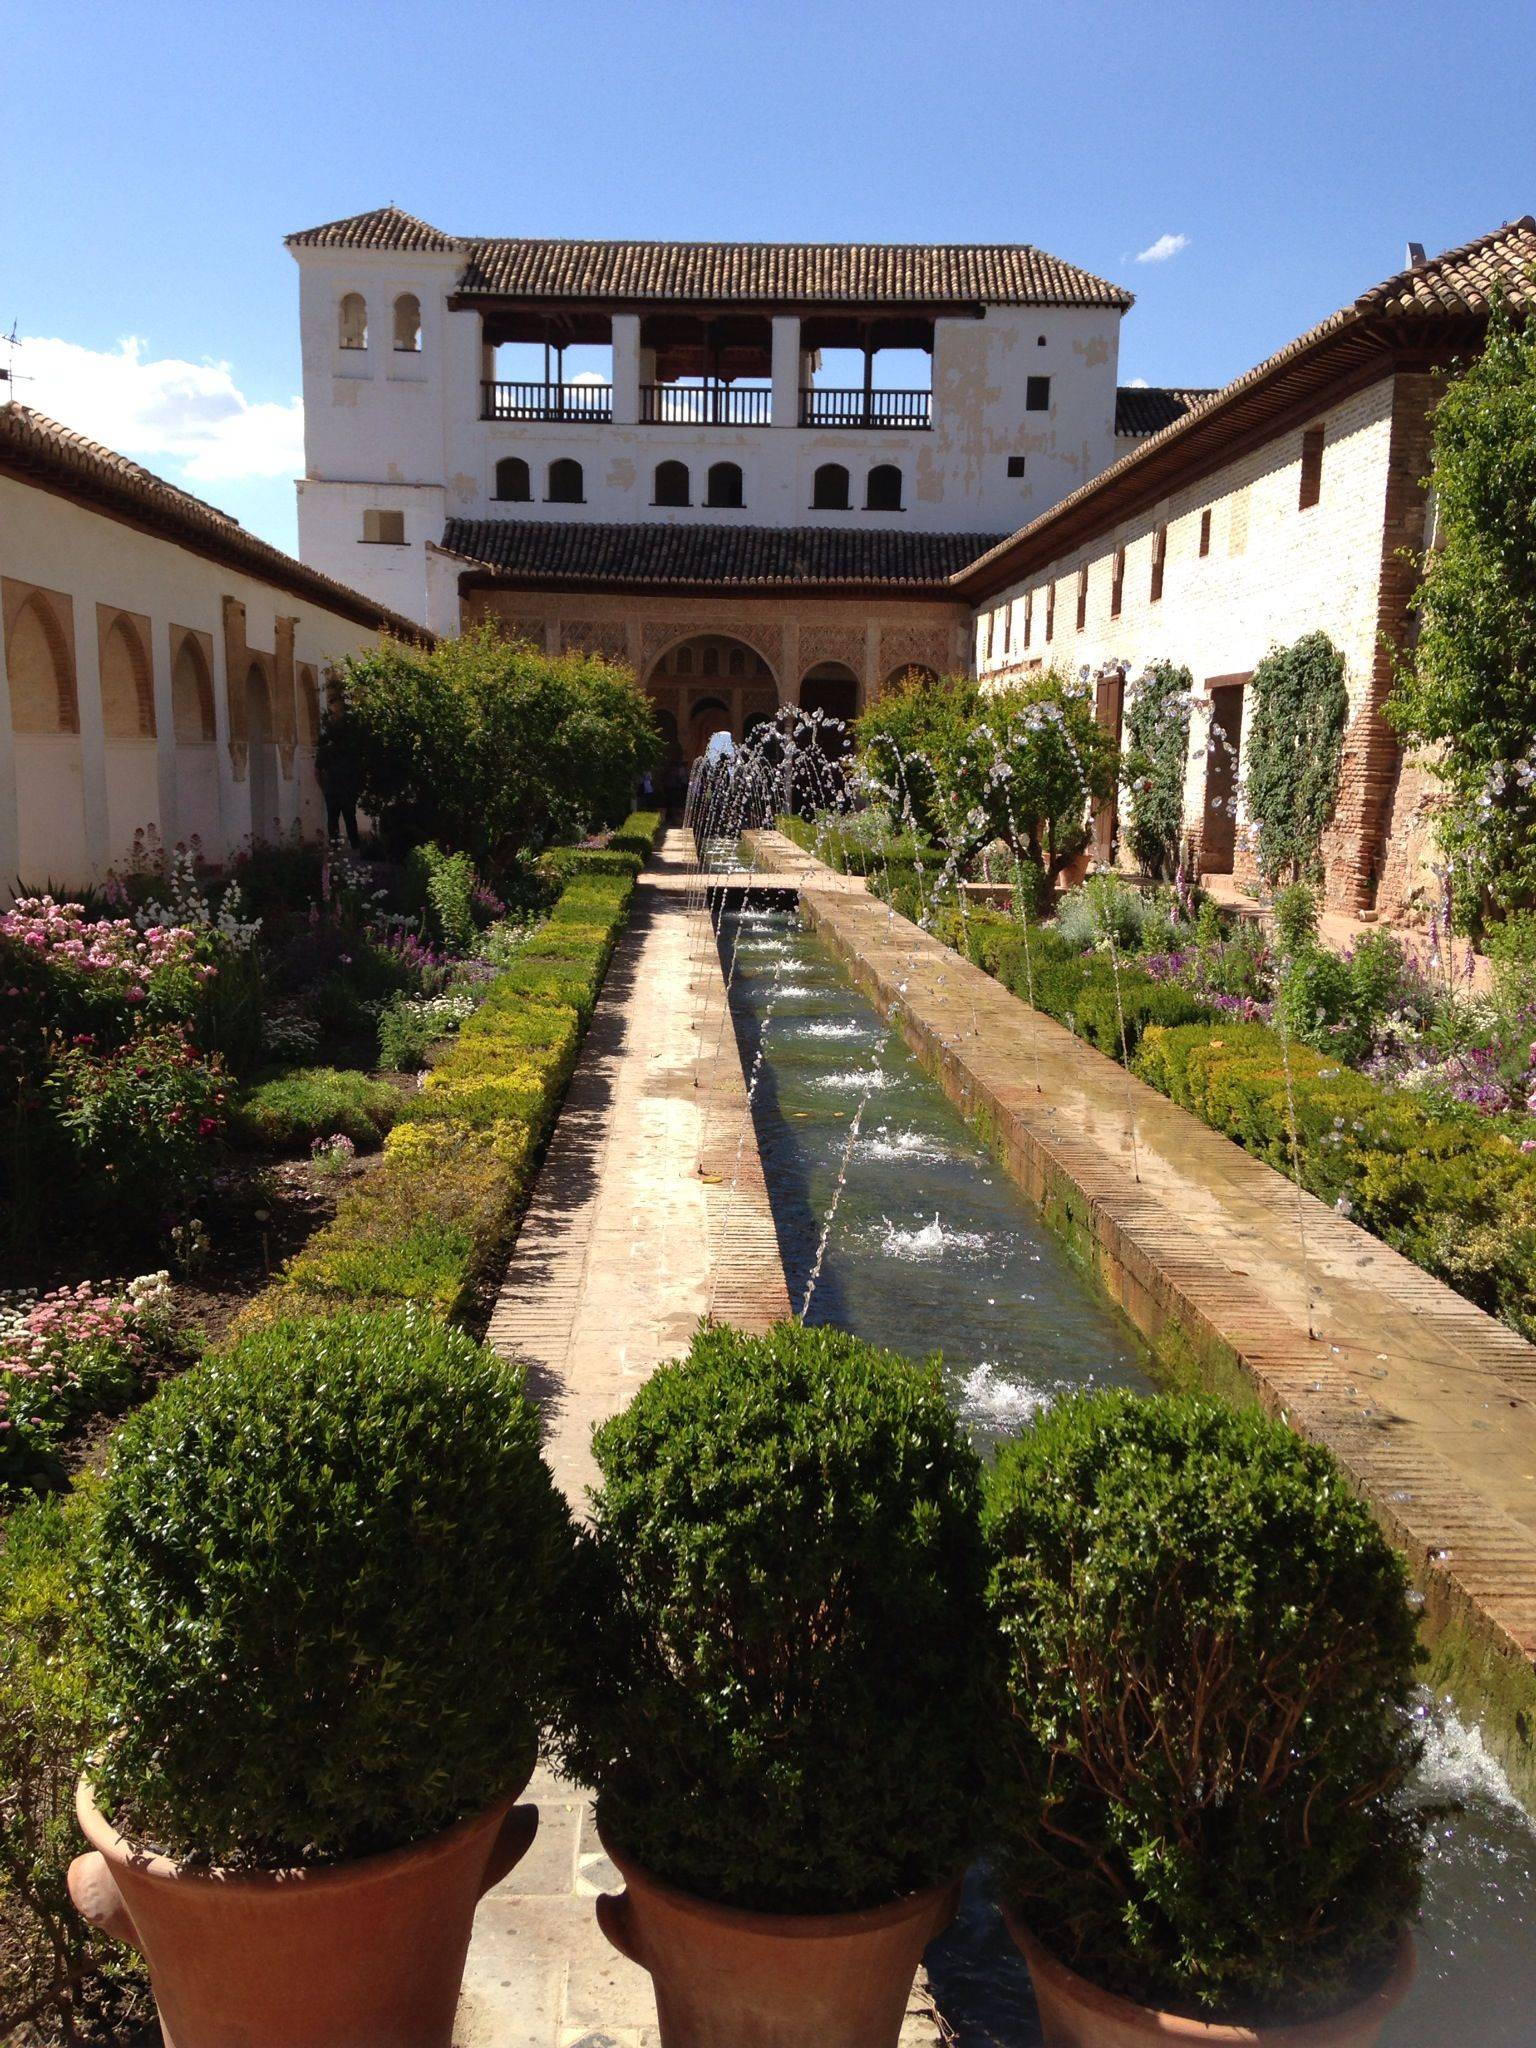 The Alhambra Courtyard Garden